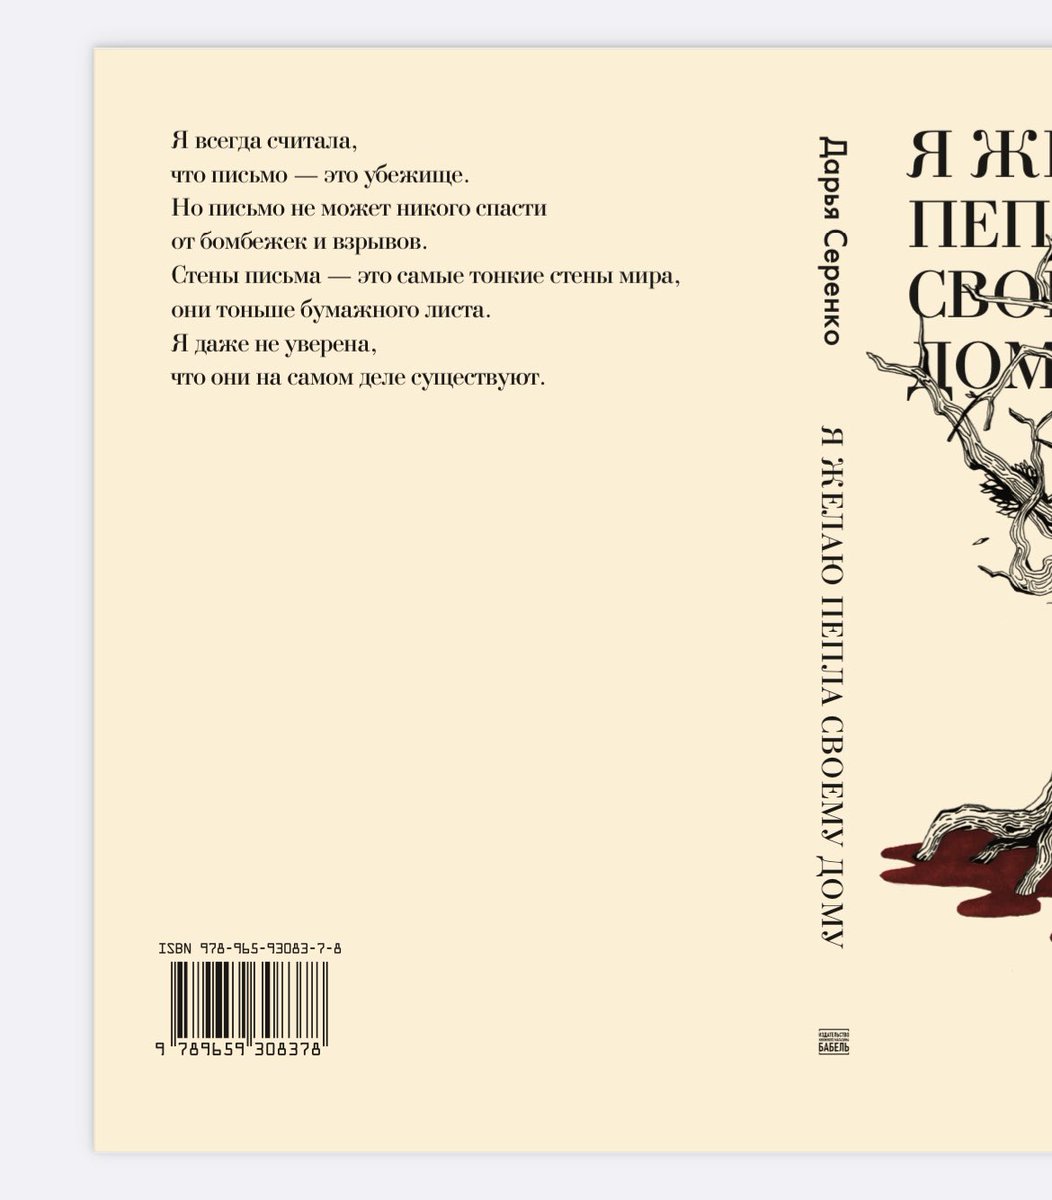 Новая книга 💧 С огромной радостью и благодарностью рассказываю, что моя новая книга только что ушла в печать! На русском языке. Скоро расскажу, как вы сможете её достать. Огромное спасибо Саше Шадриной, всем сотрудникам и сотрудницам издательства «Бабель» за верстку, дизайн,…